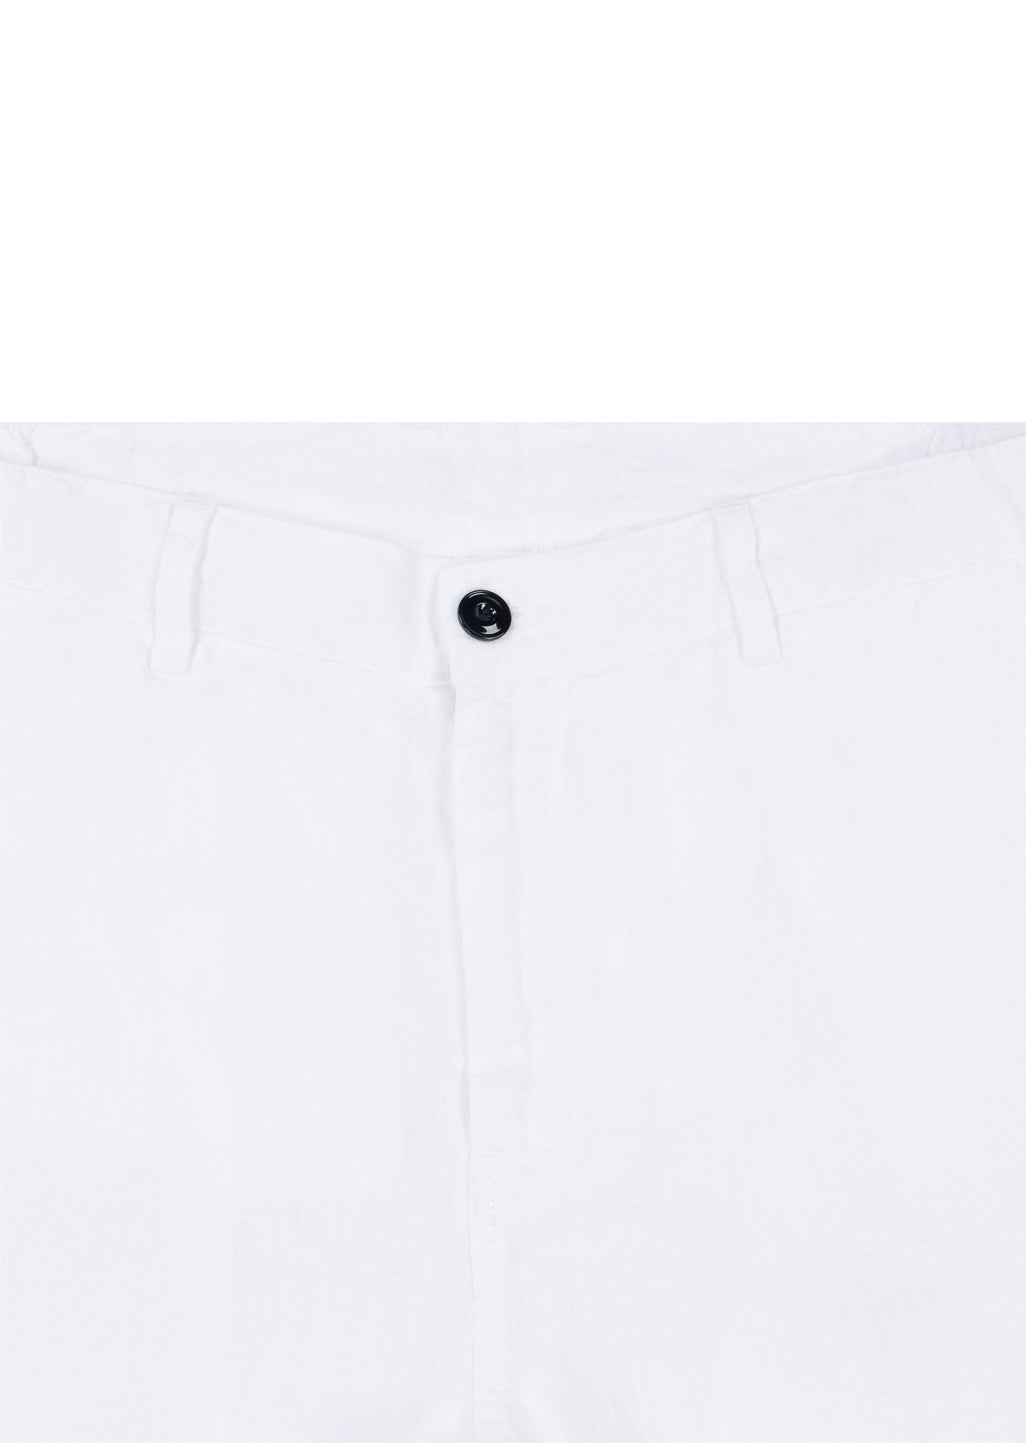 Elasticated Linen Short in White